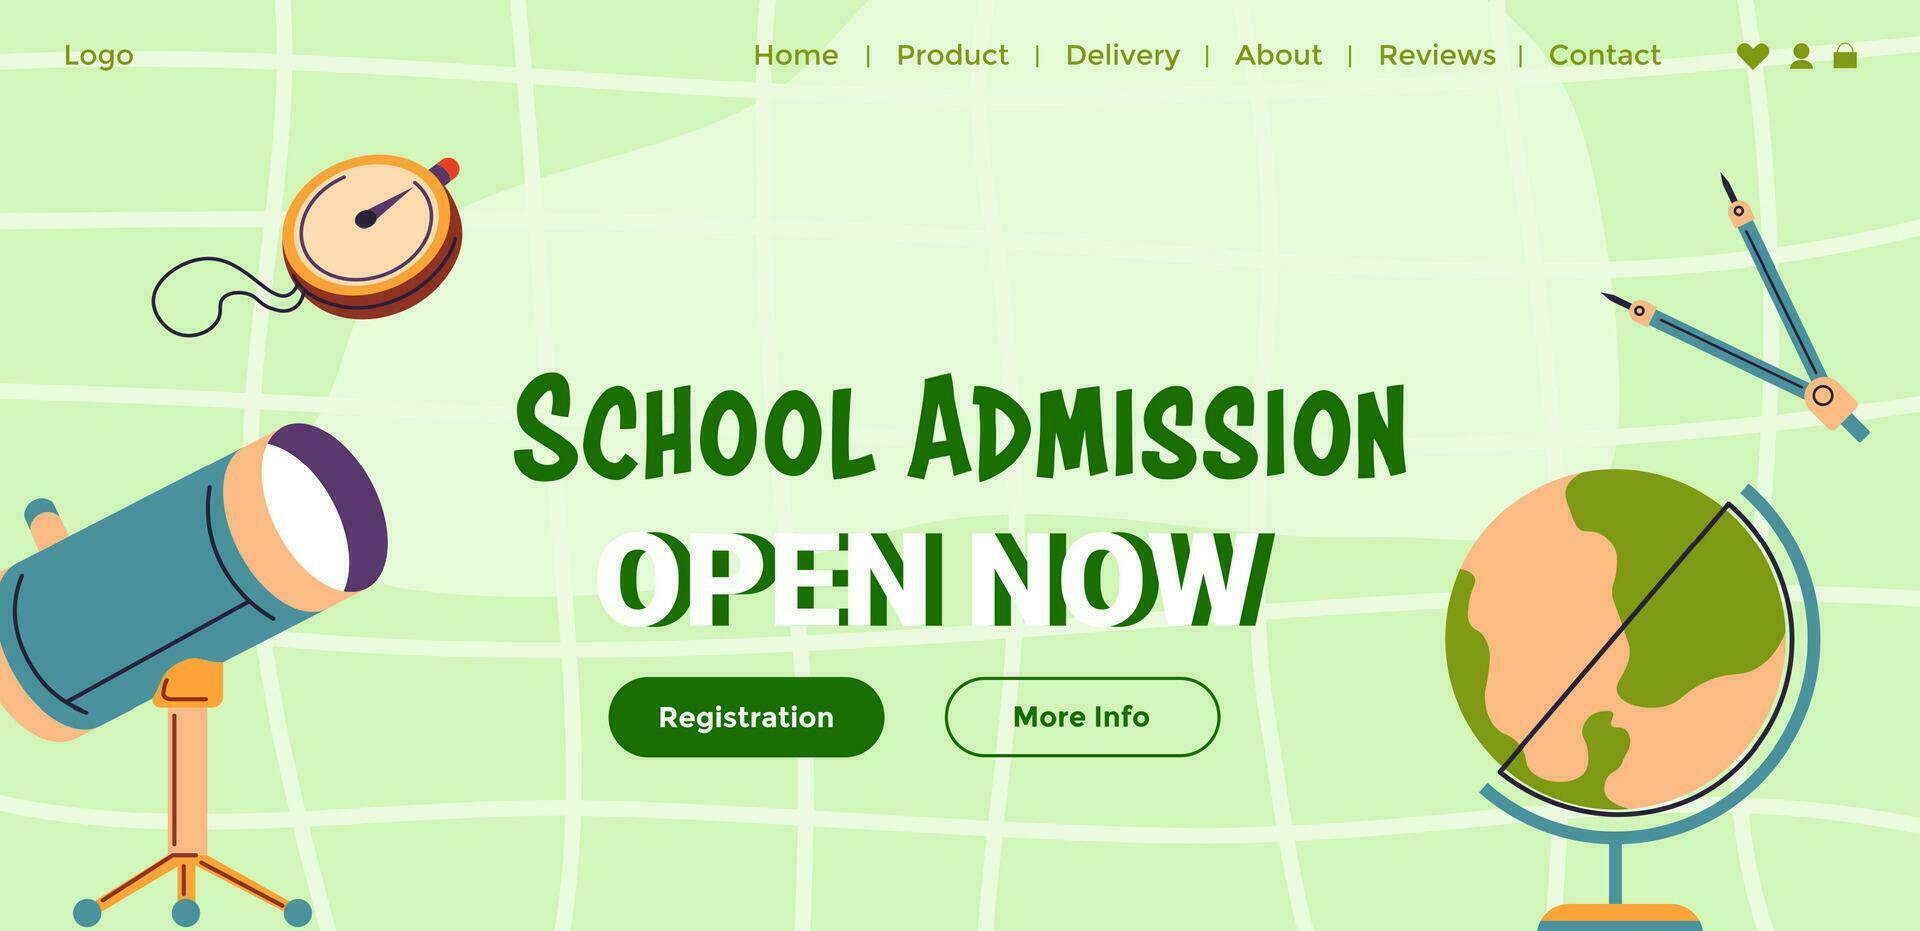 colegio admisión, abierto para registro ahora web vector